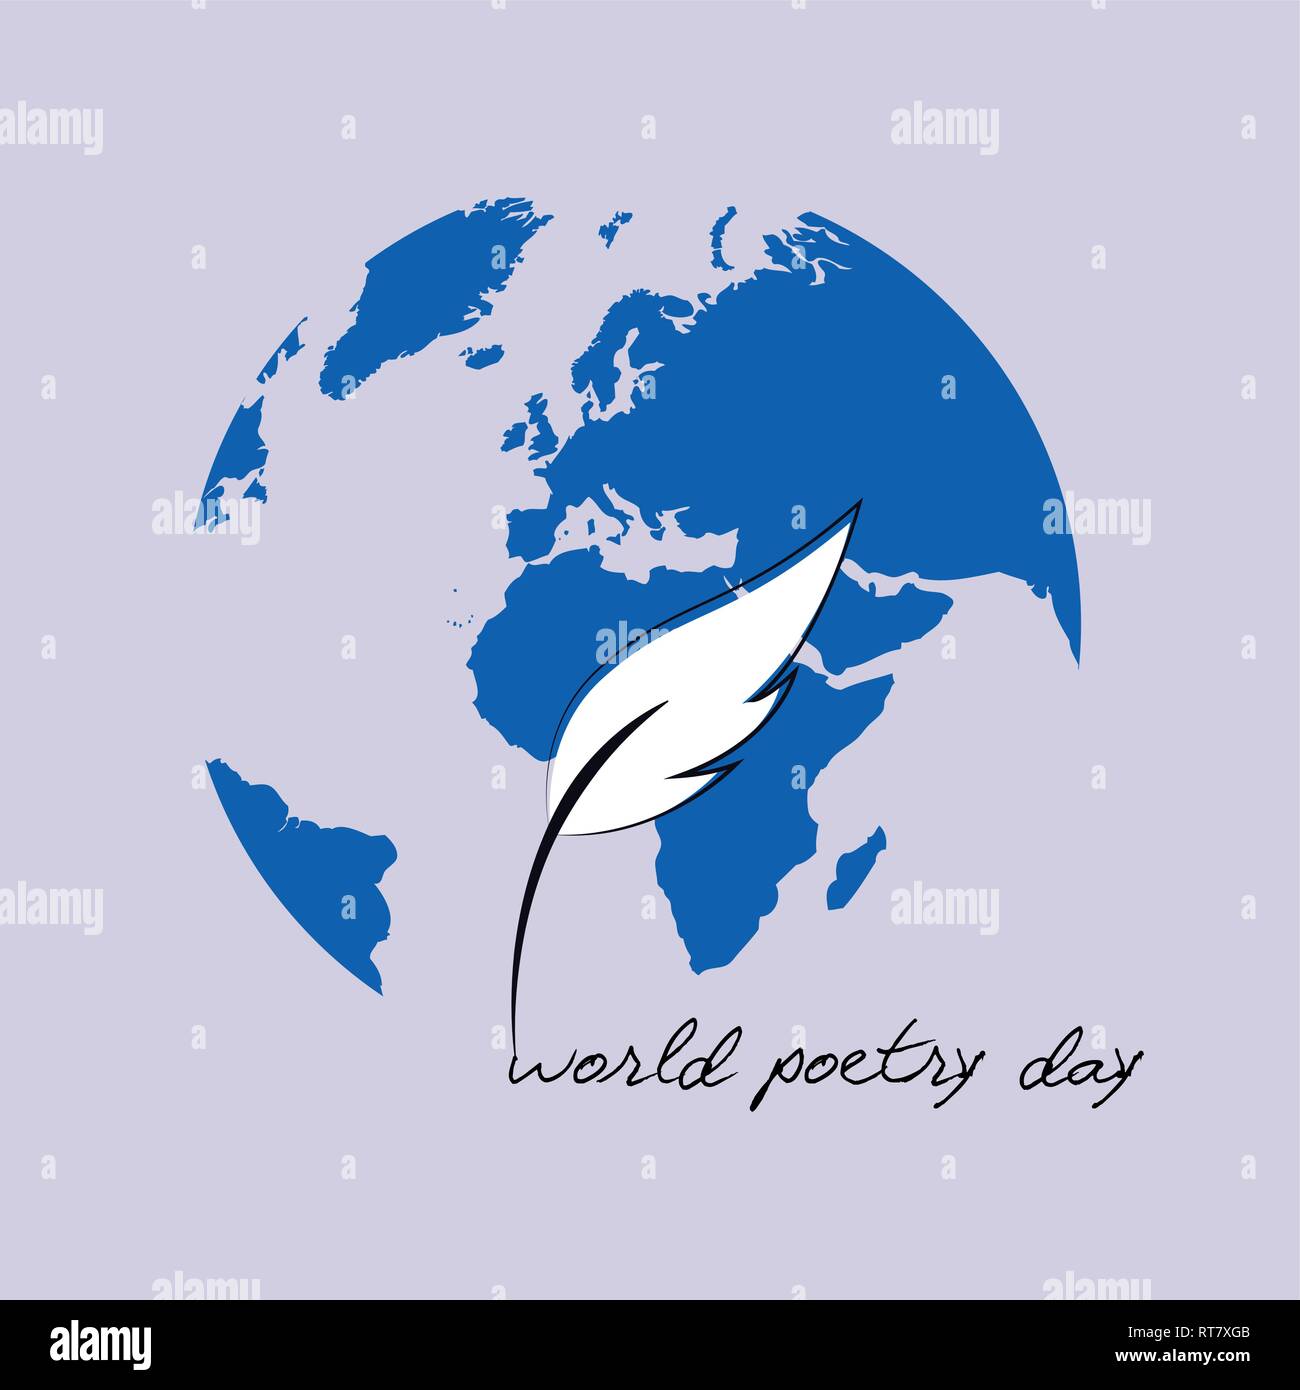 La poesia del mondo giorno schizzo di una penna stilografica e terra blu illustrazione vettoriale EPS10 Illustrazione Vettoriale